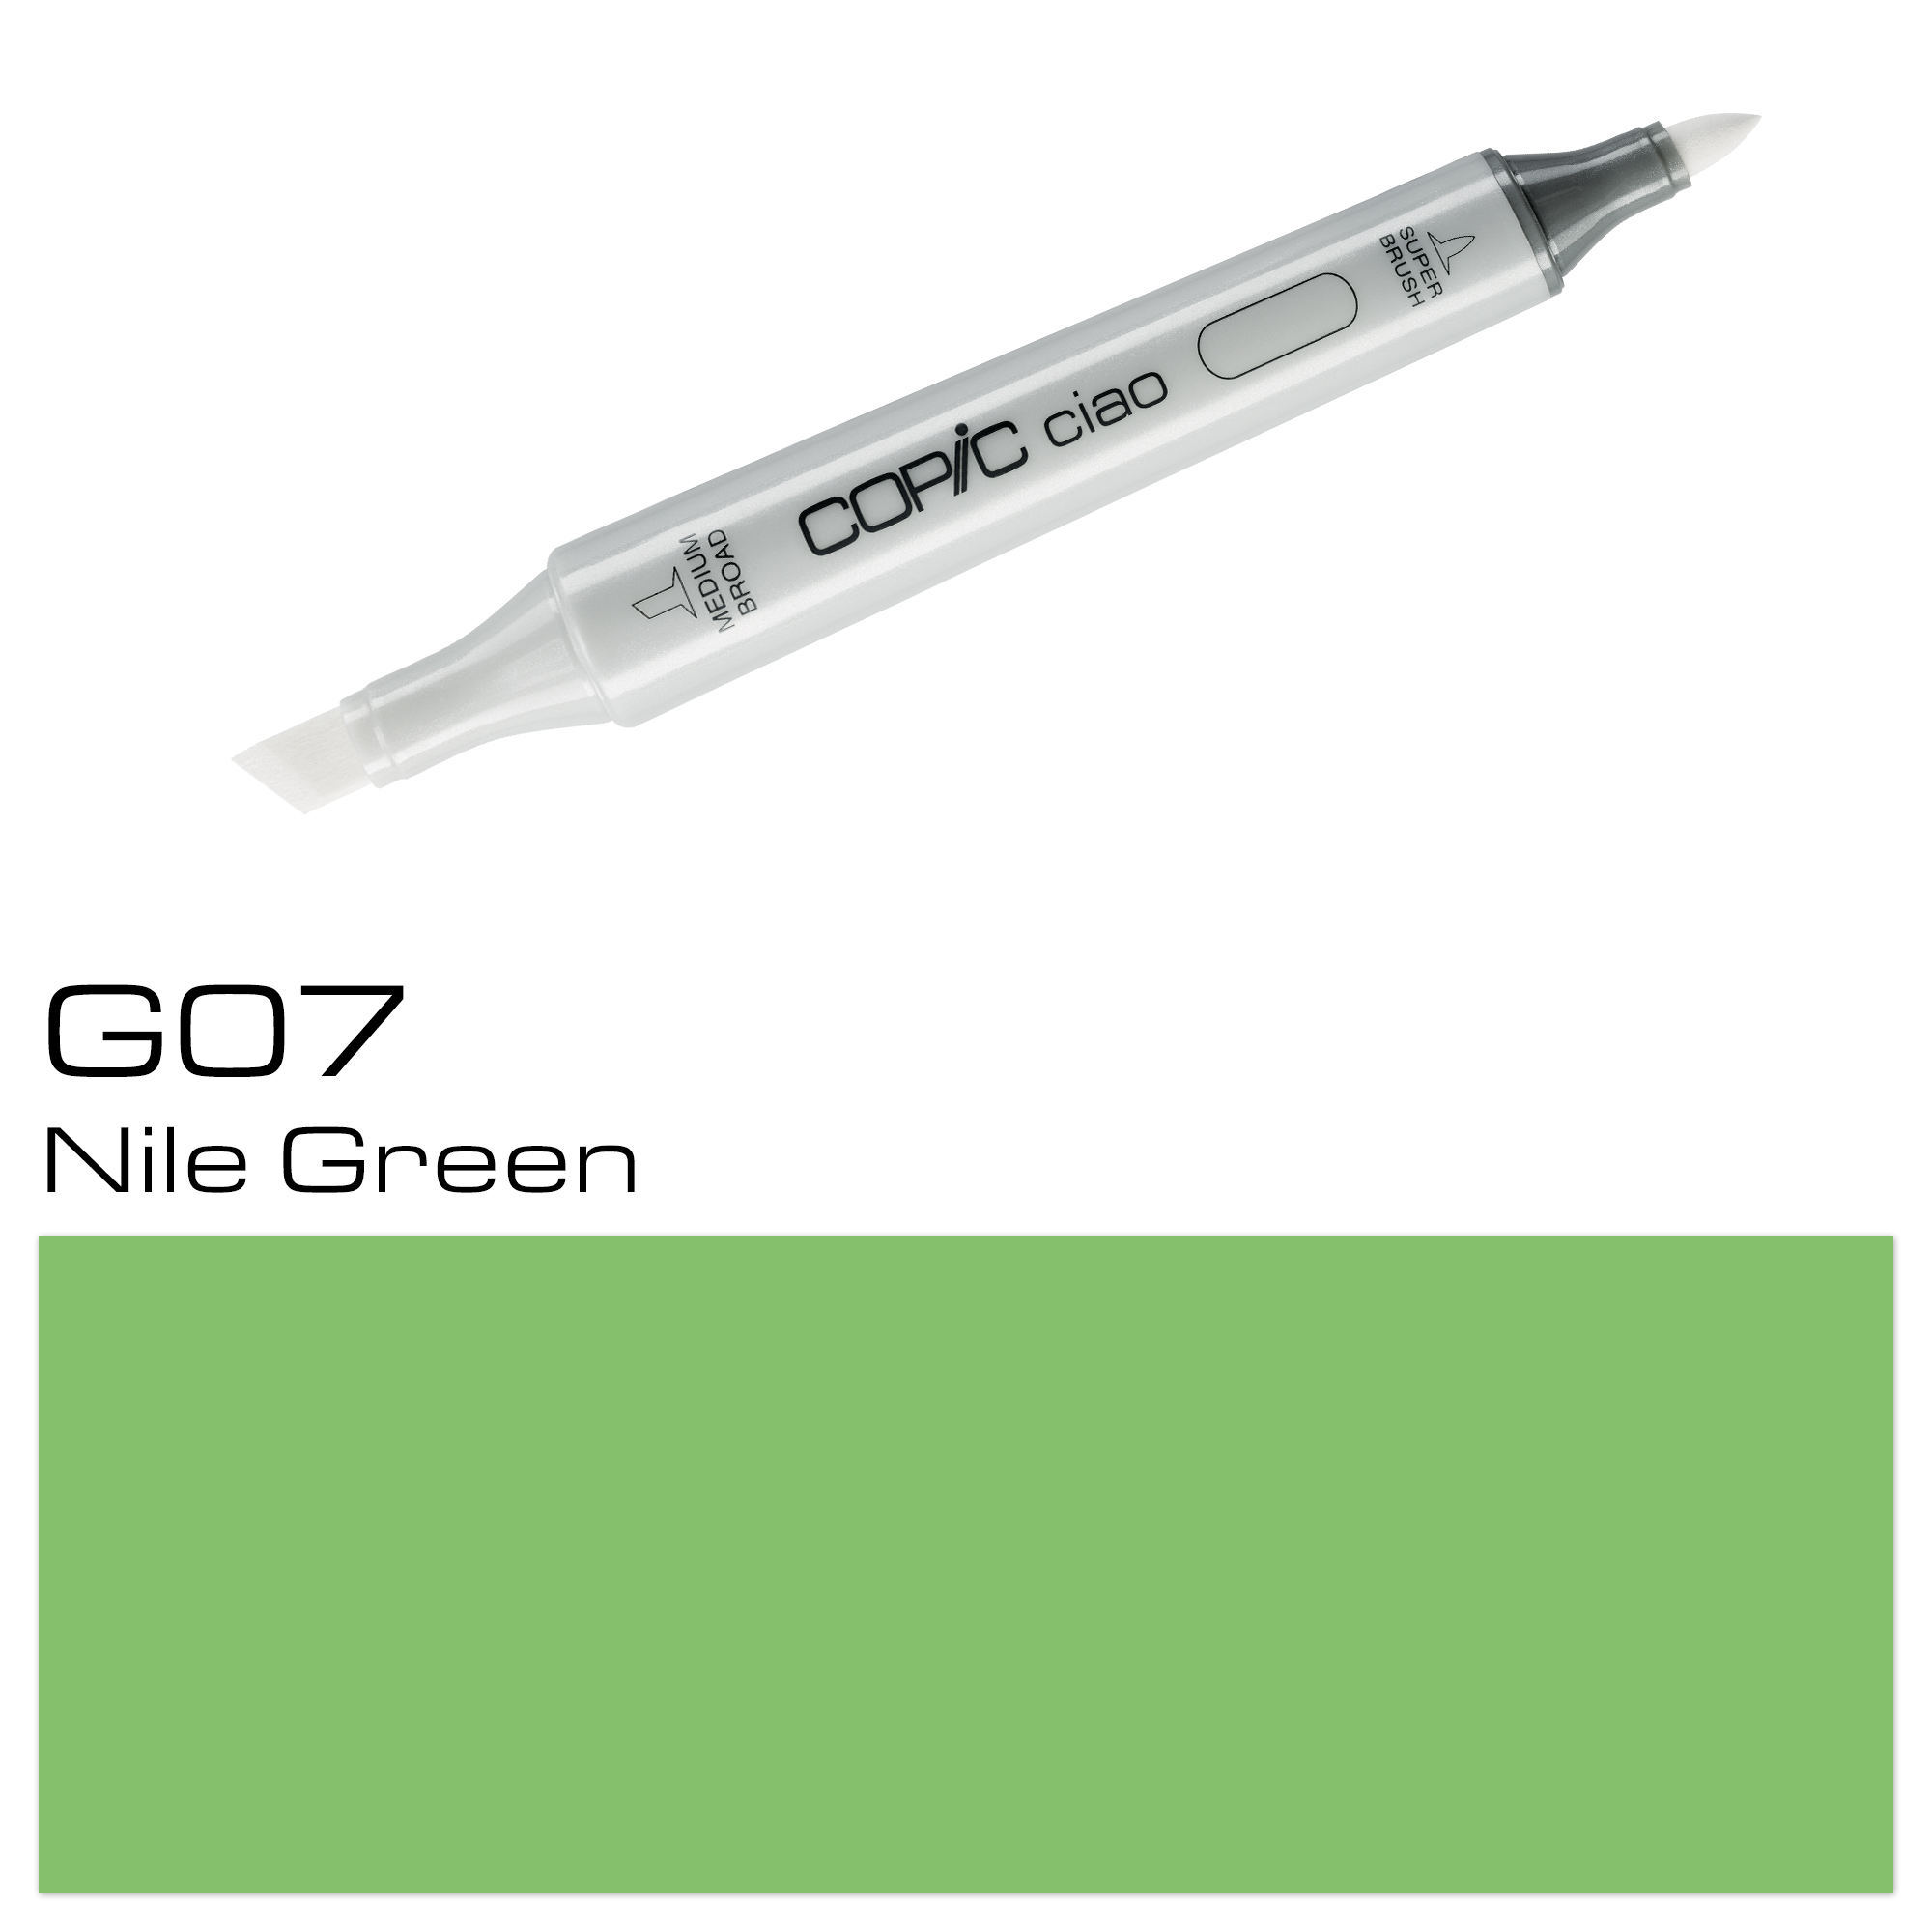 COPIC CIAO NILE GREEN G07